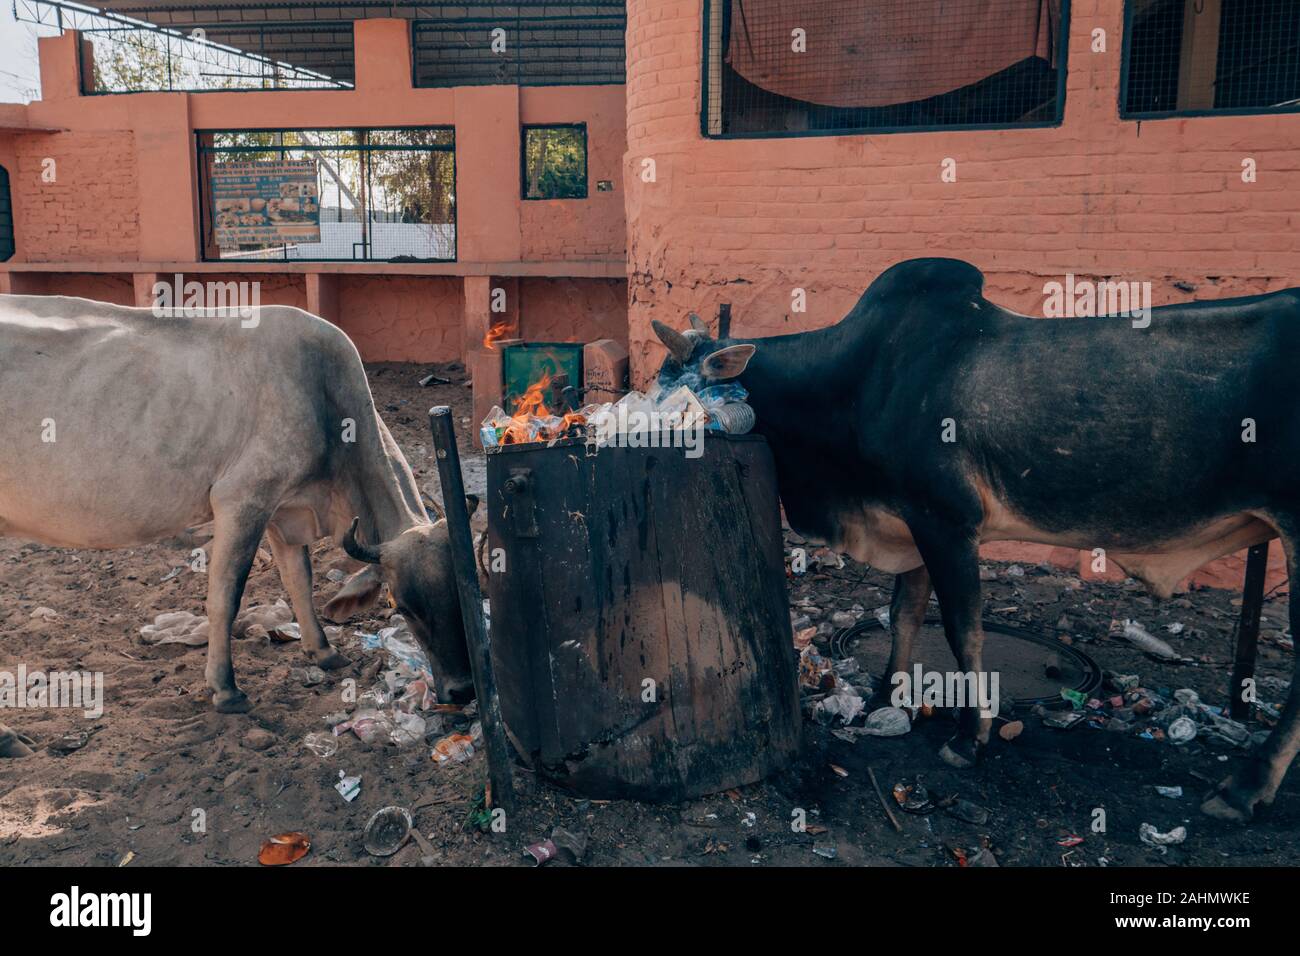 Mucche mangiano il cestino sulla strada in India un problema ambientale Foto Stock